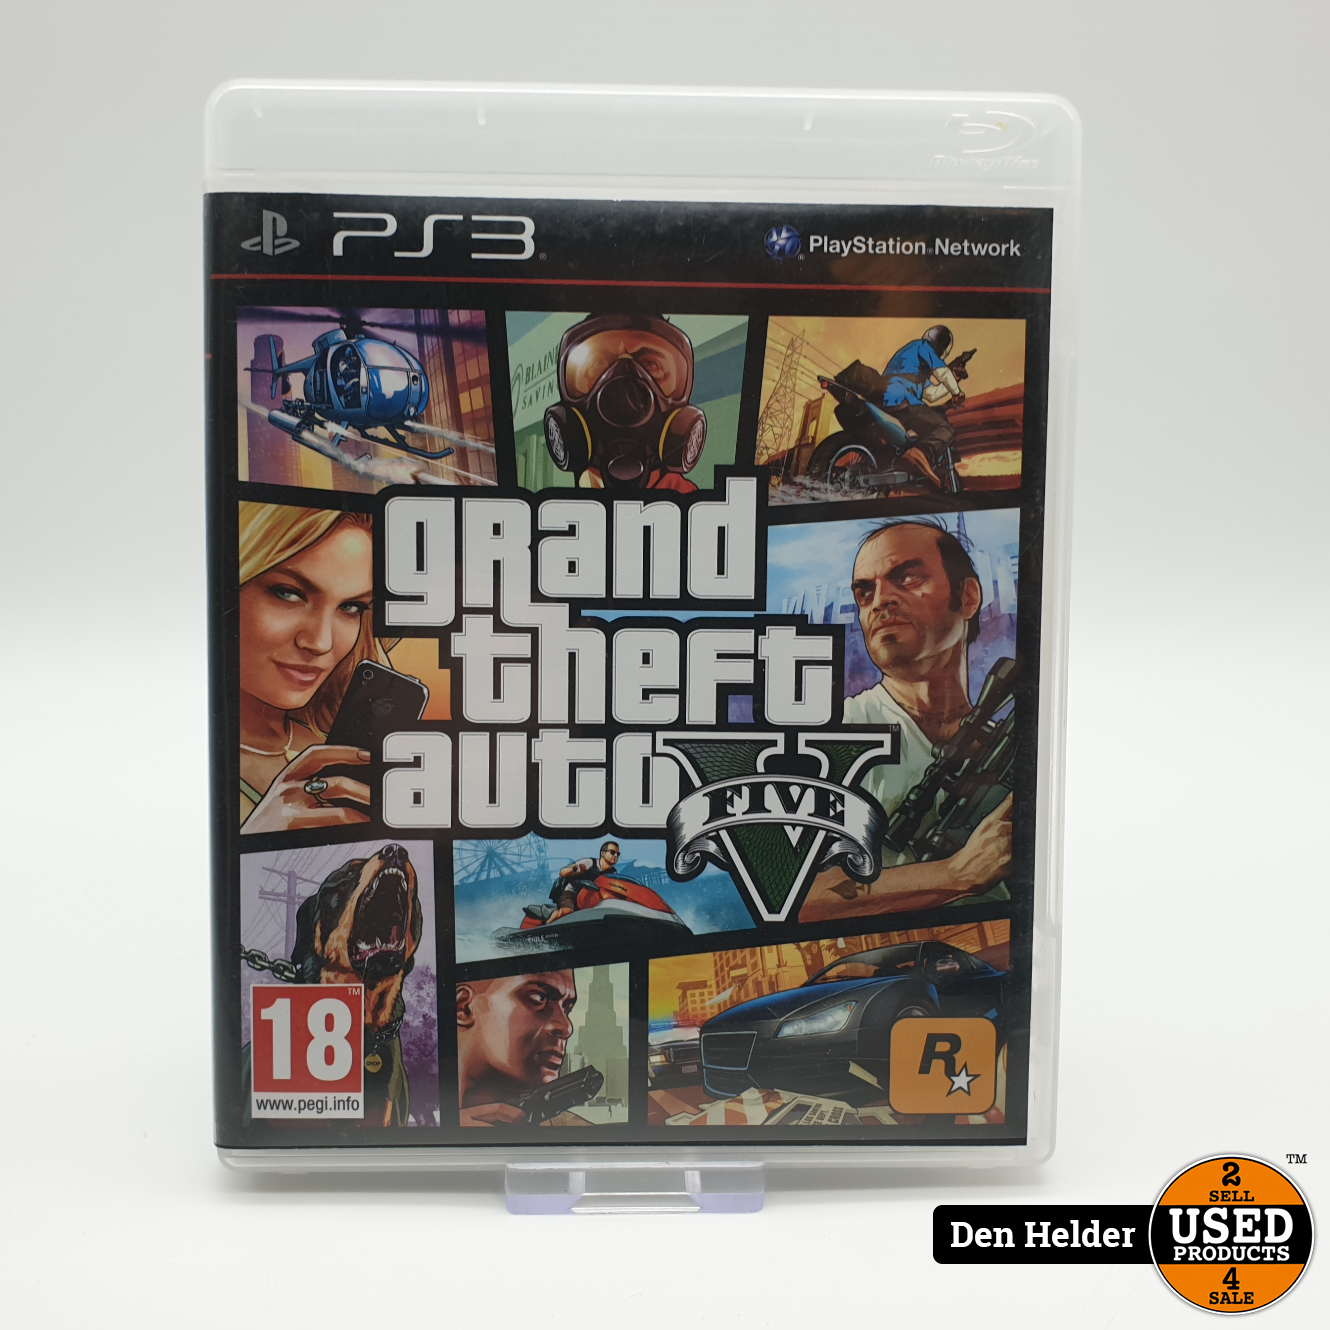 Vies Verkleuren top Grand Theft Auto Five PS3 Game - In Nette Staat - Used Products Den Helder